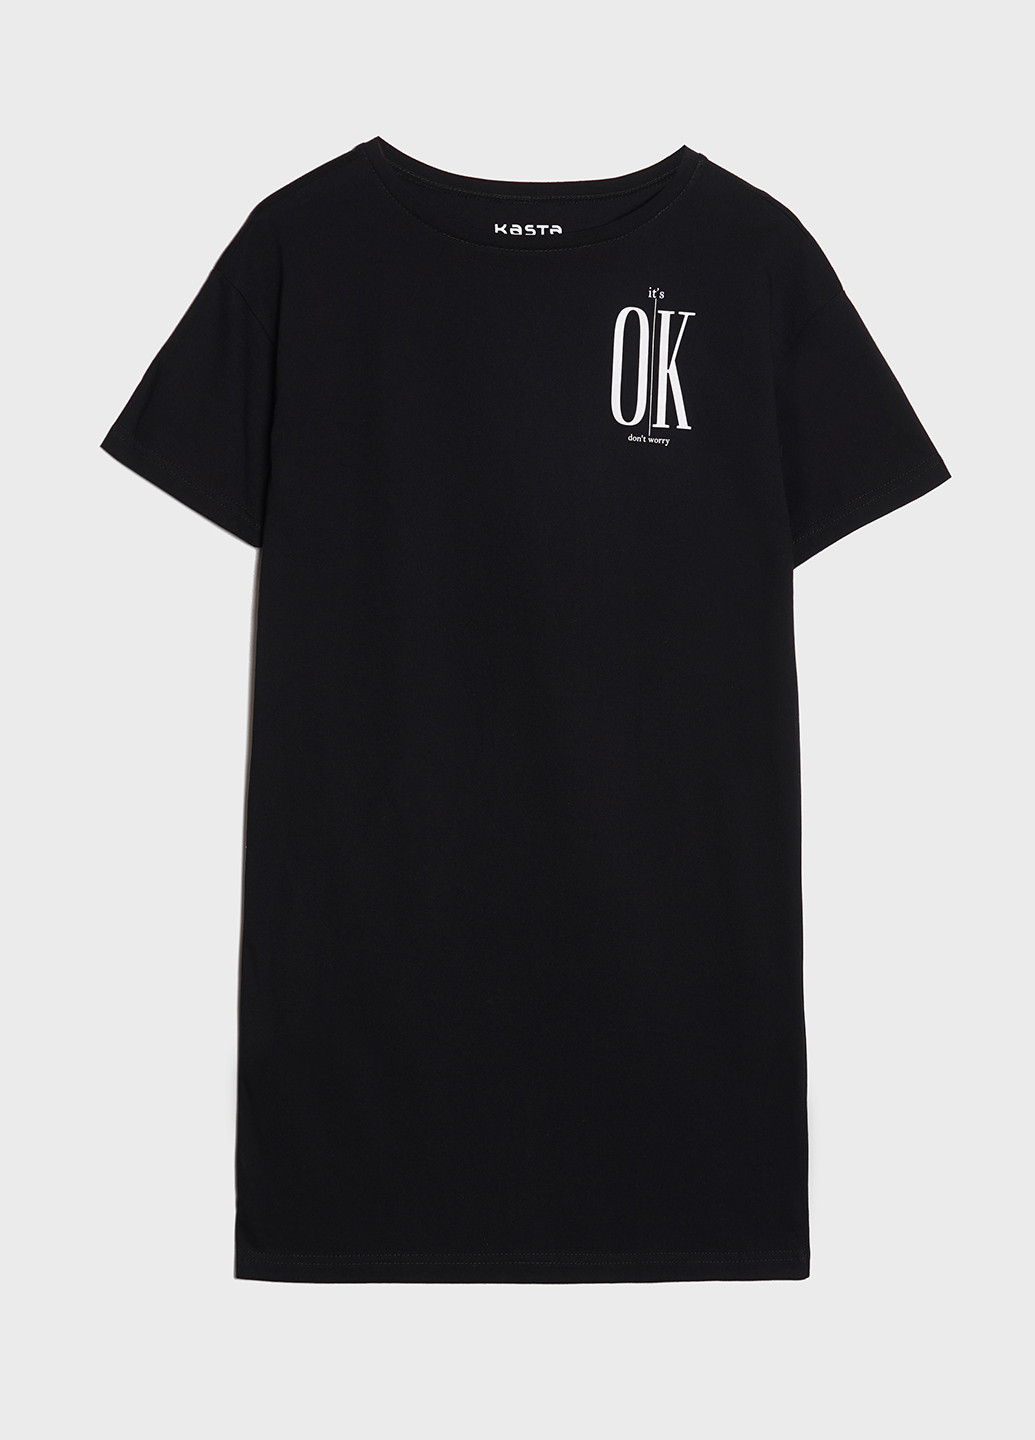 Черное домашнее футболка-платье, черная it's okay платье-футболка KASTA design с надписью